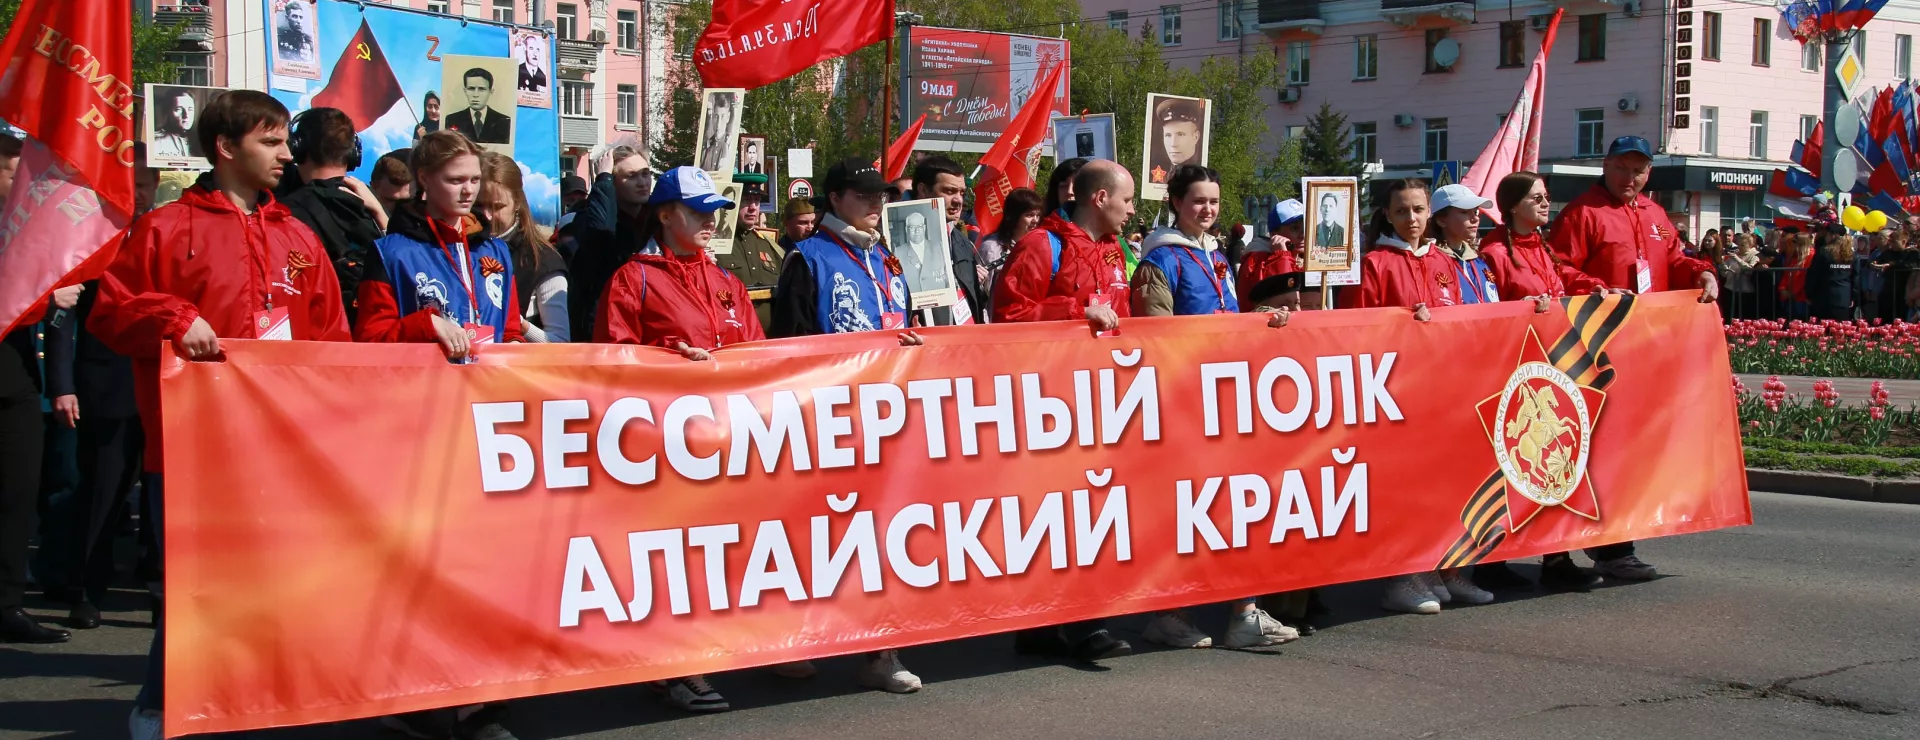 В Алтайском крае отменили шествие Бессмертного полка и майские салюты